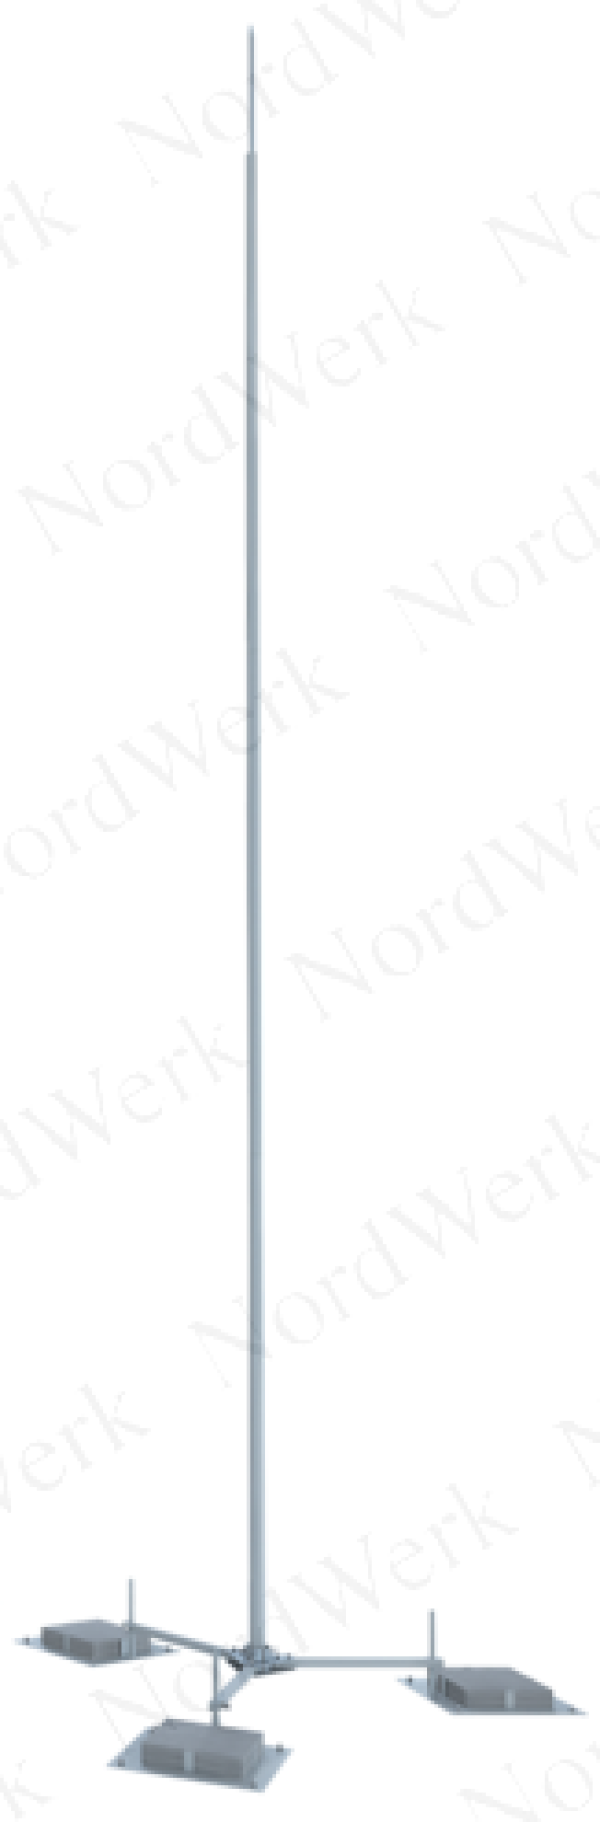 NordWerk МСАА-М-3,6-П – Молниеотвод высотой 3,6 метров для активных молниеприемников (алюминий; с основанием под плитку)